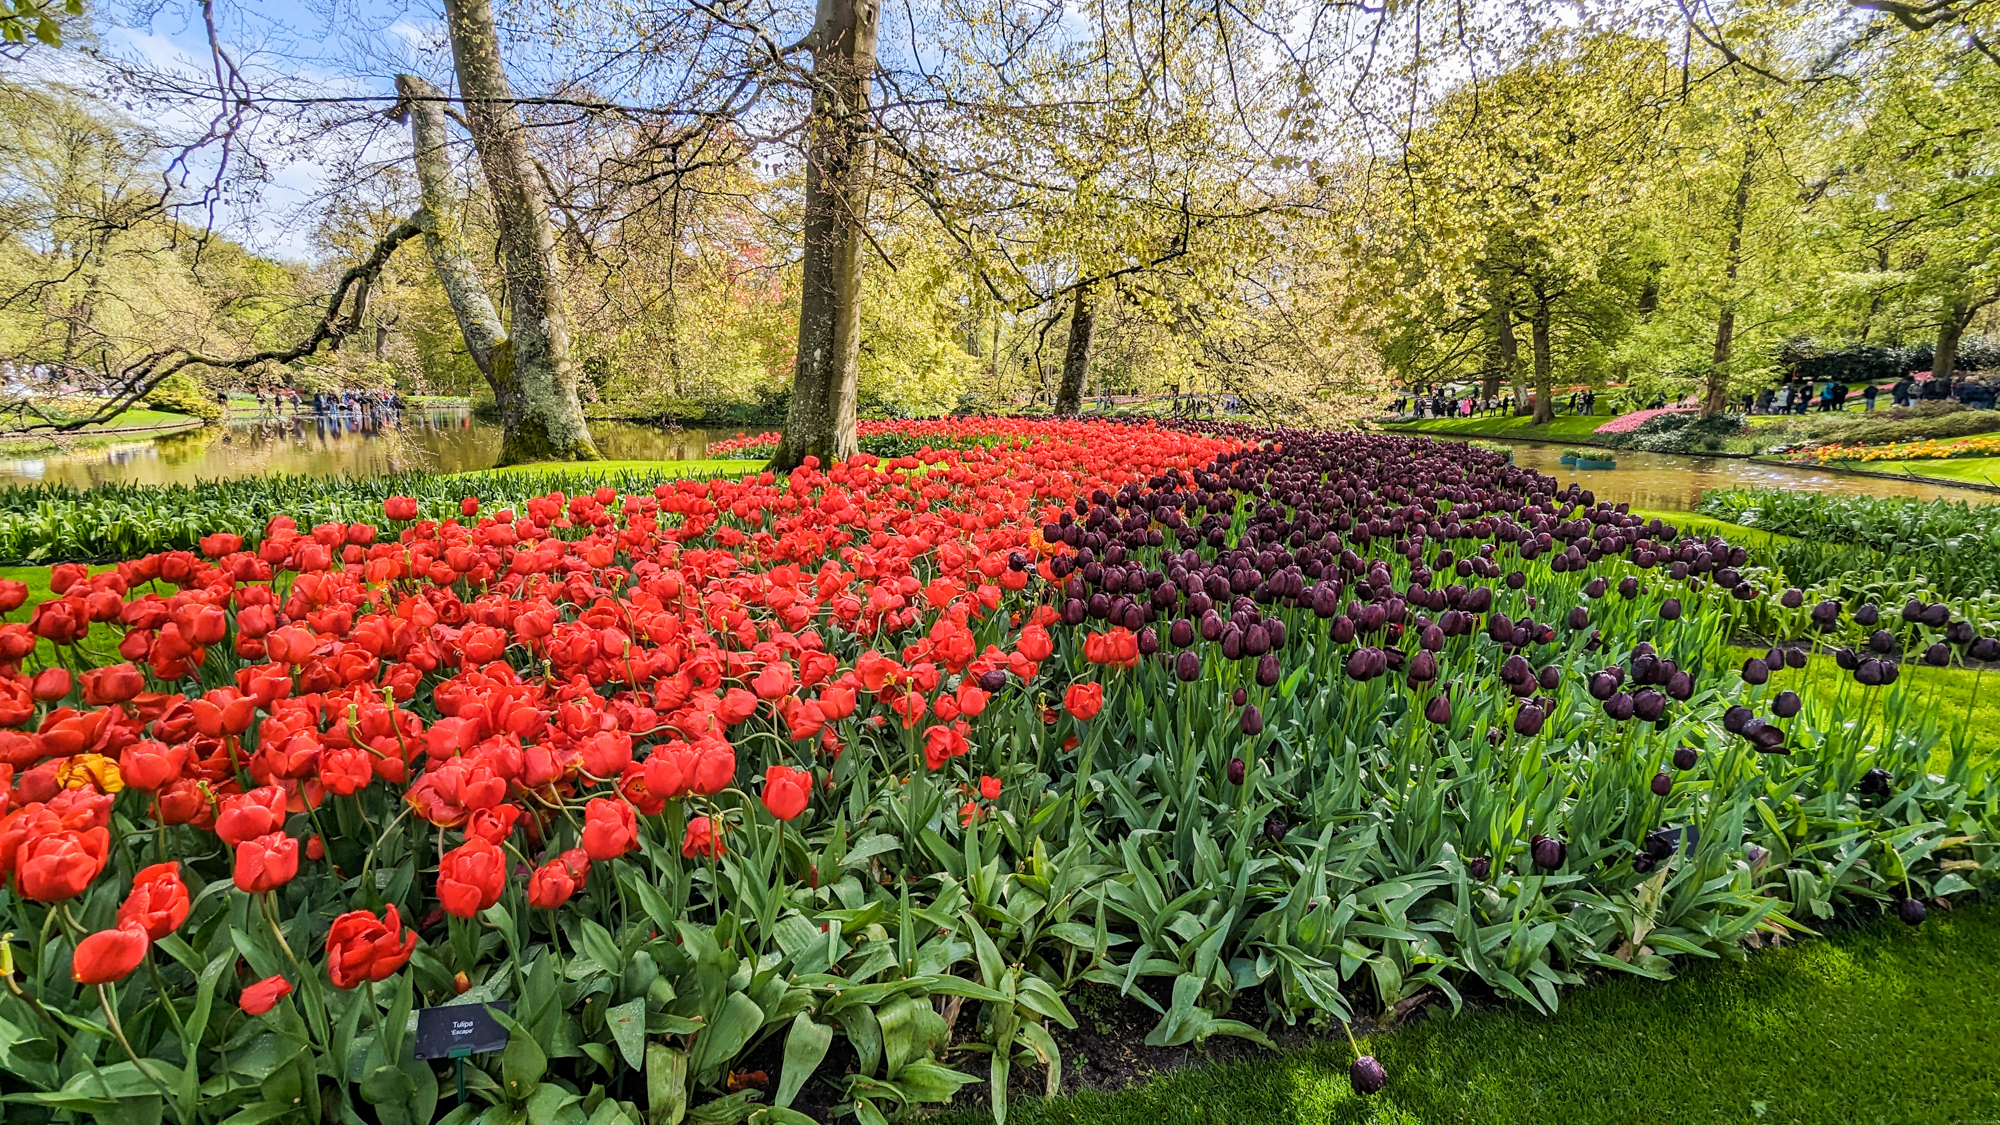 Záhrada bola založená v roku 1949 miestnymi pestovateľmi kvetov a exportérmi s cieľom prezentovať holandské kvetinárske produkty.